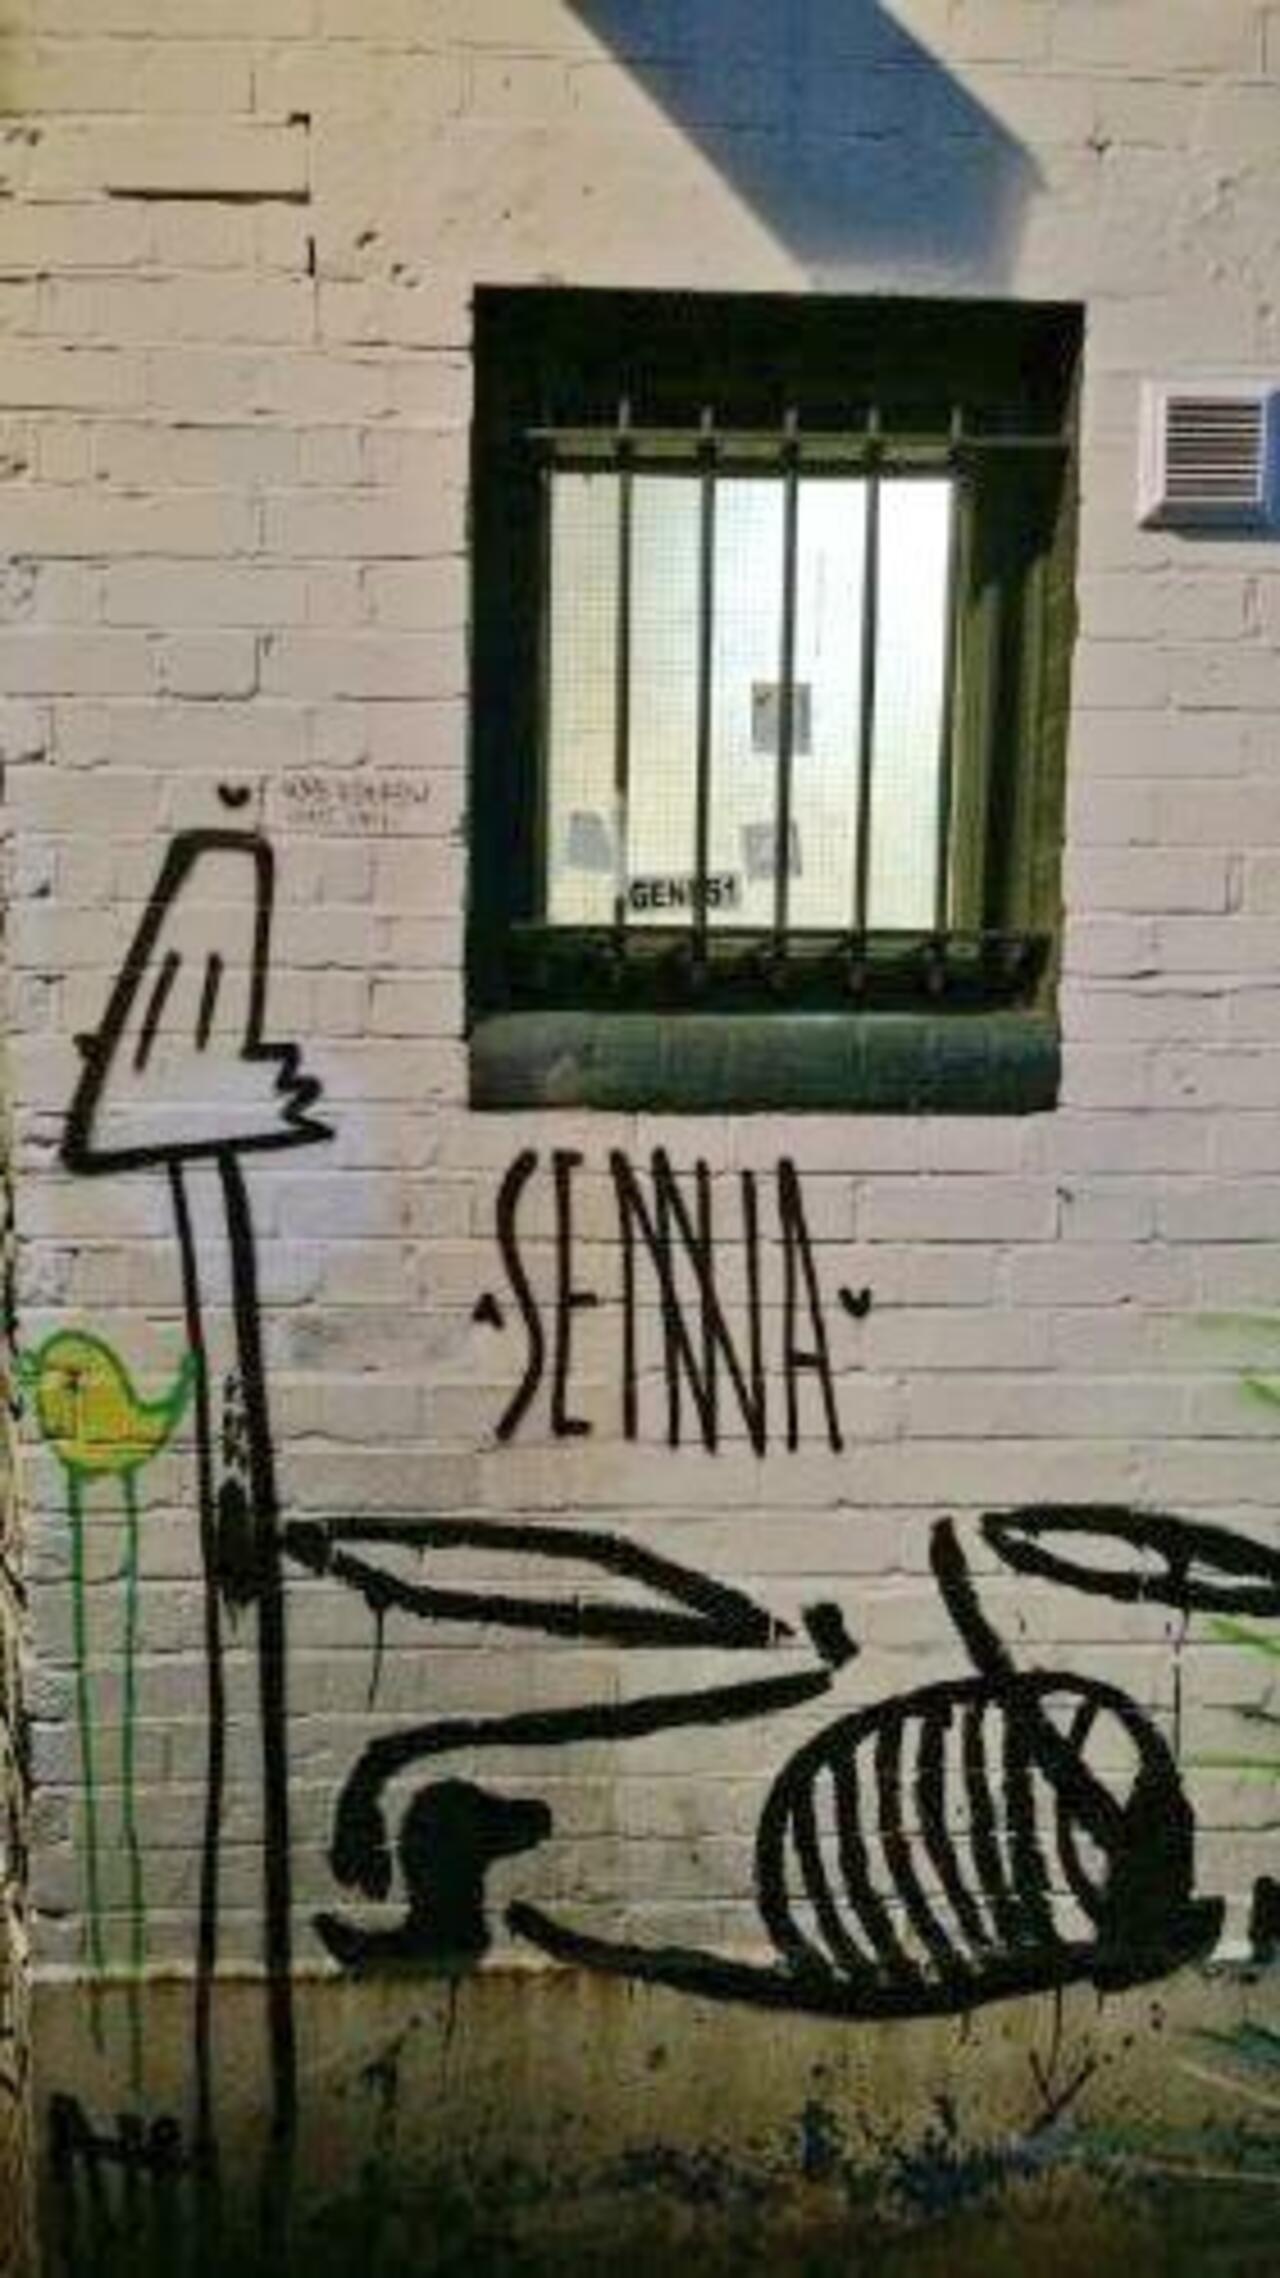 RT@Pitchuskita: Brazilian artist Alex Senna & Benjamin Murphy 
CAMDEN TOWN

#streetart #art #graffiti http://t.co/LVP6dKlUm6"